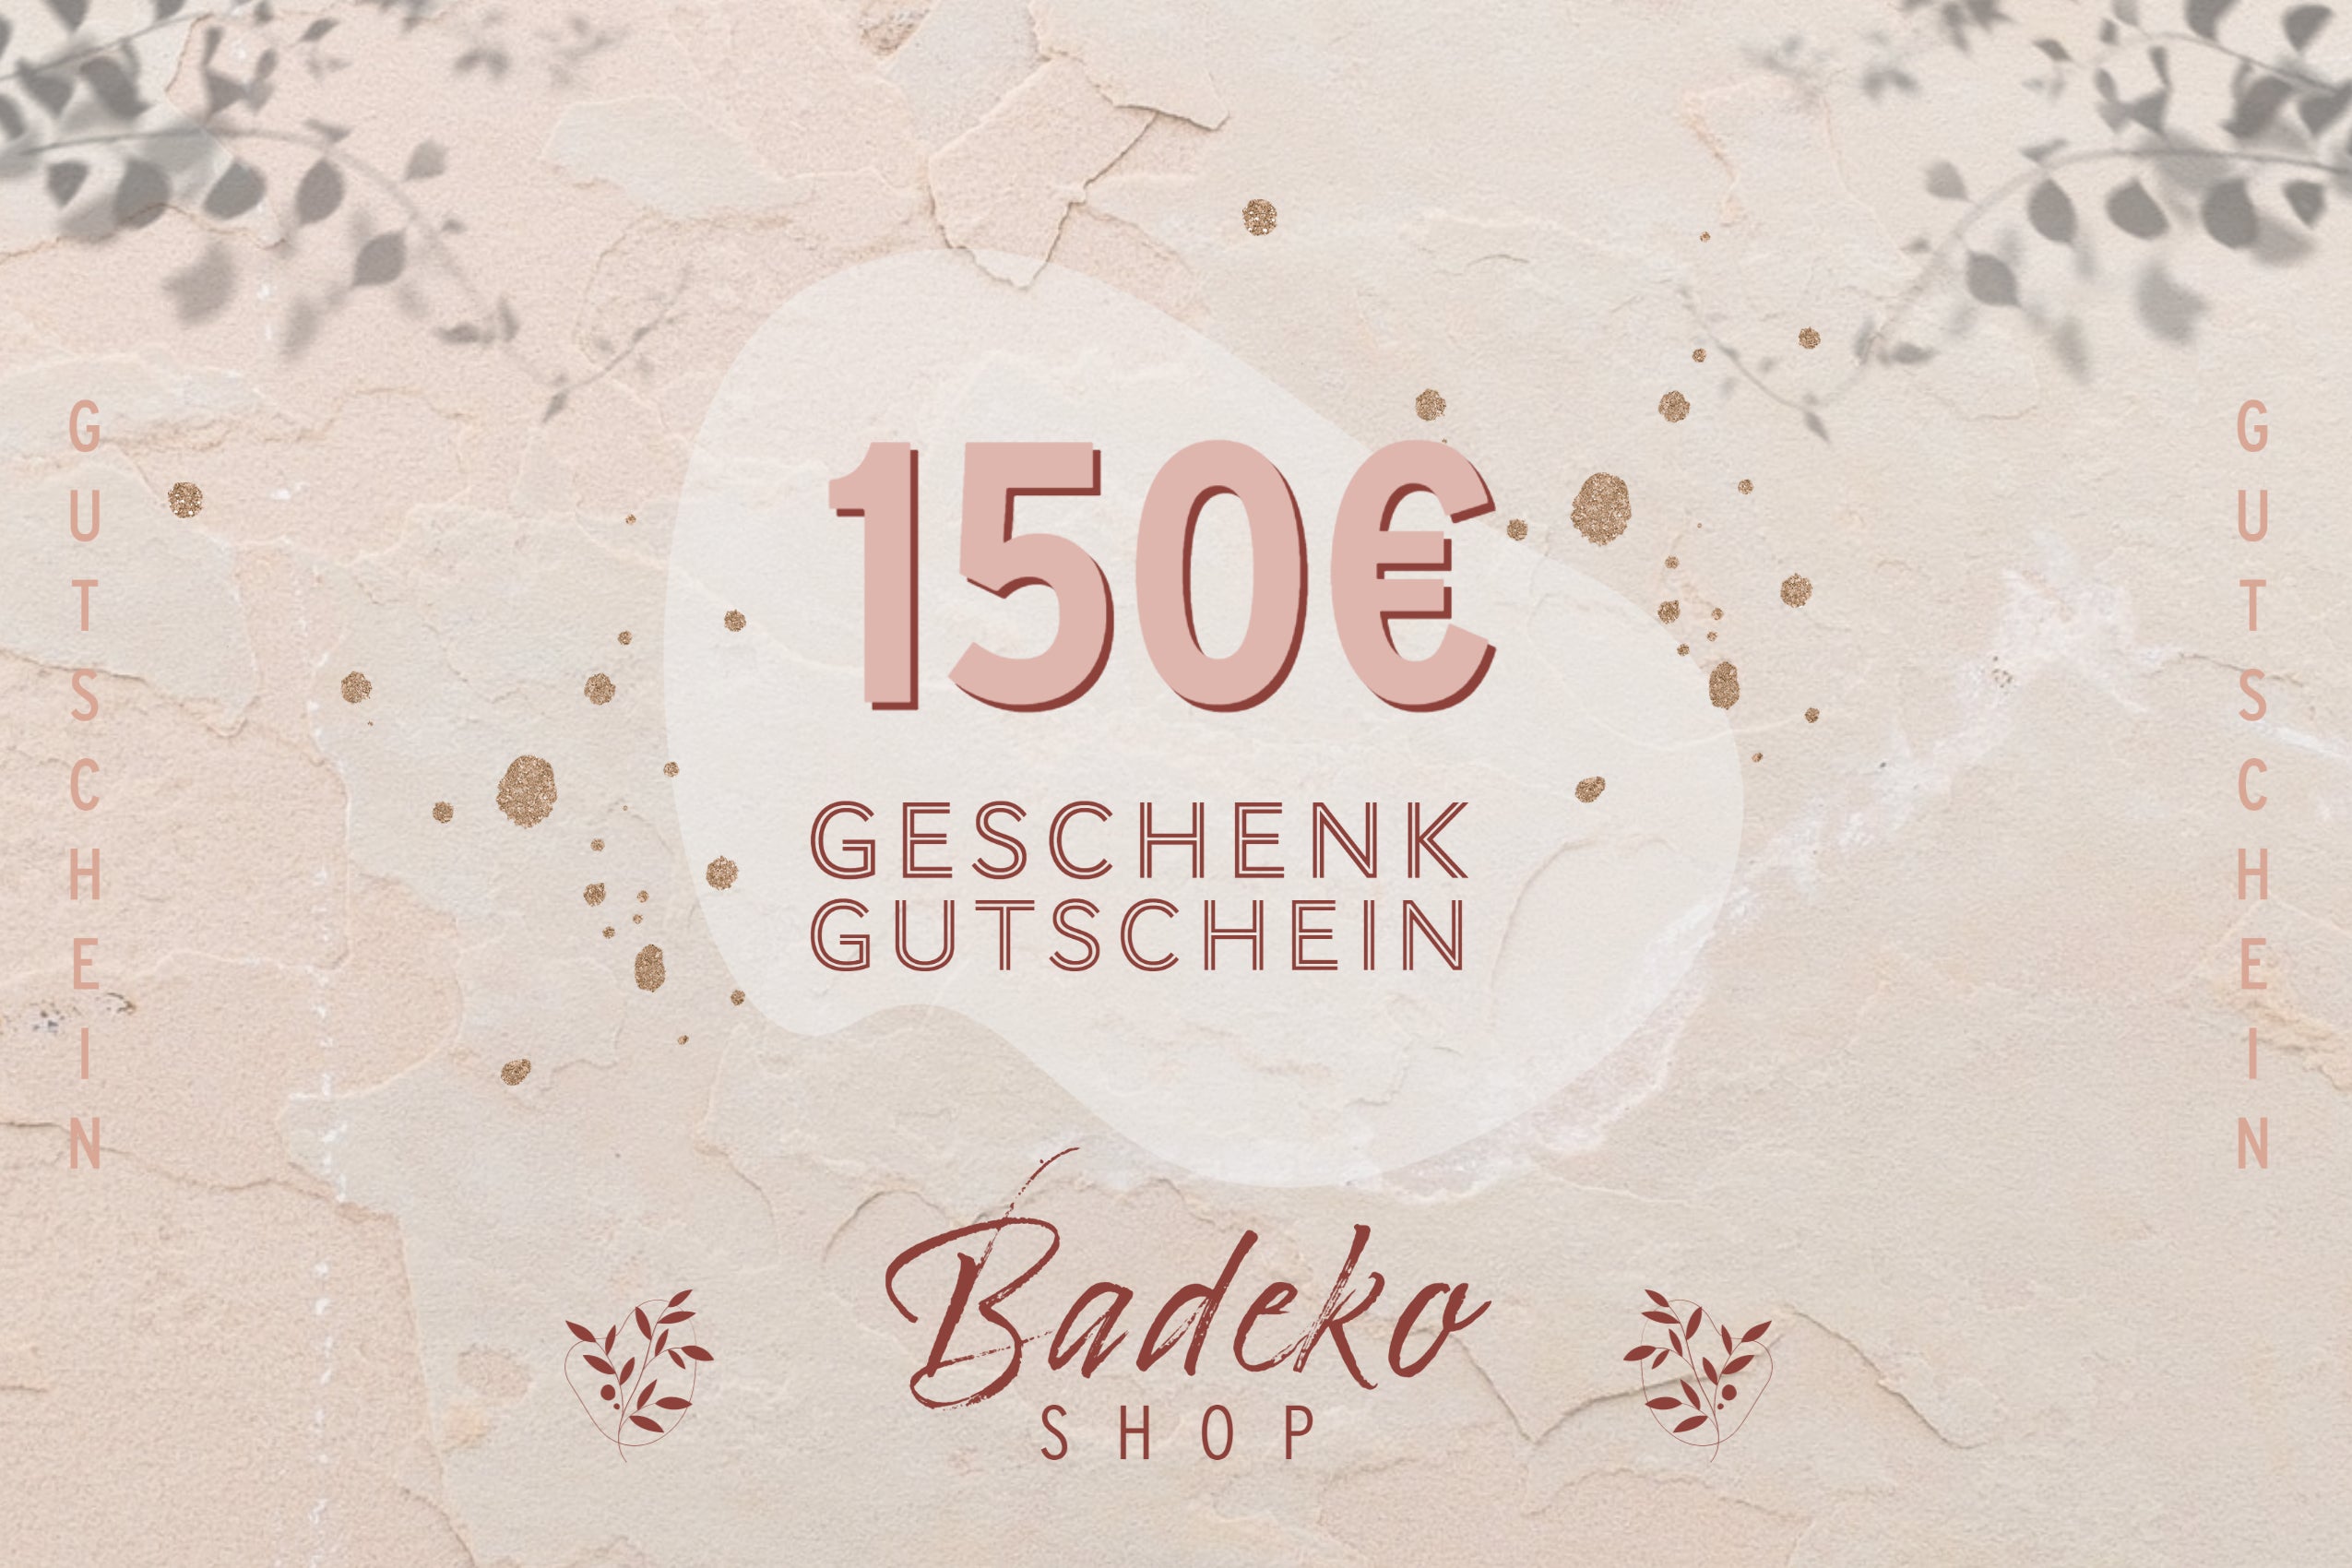 Badeko-Shop Gutschein